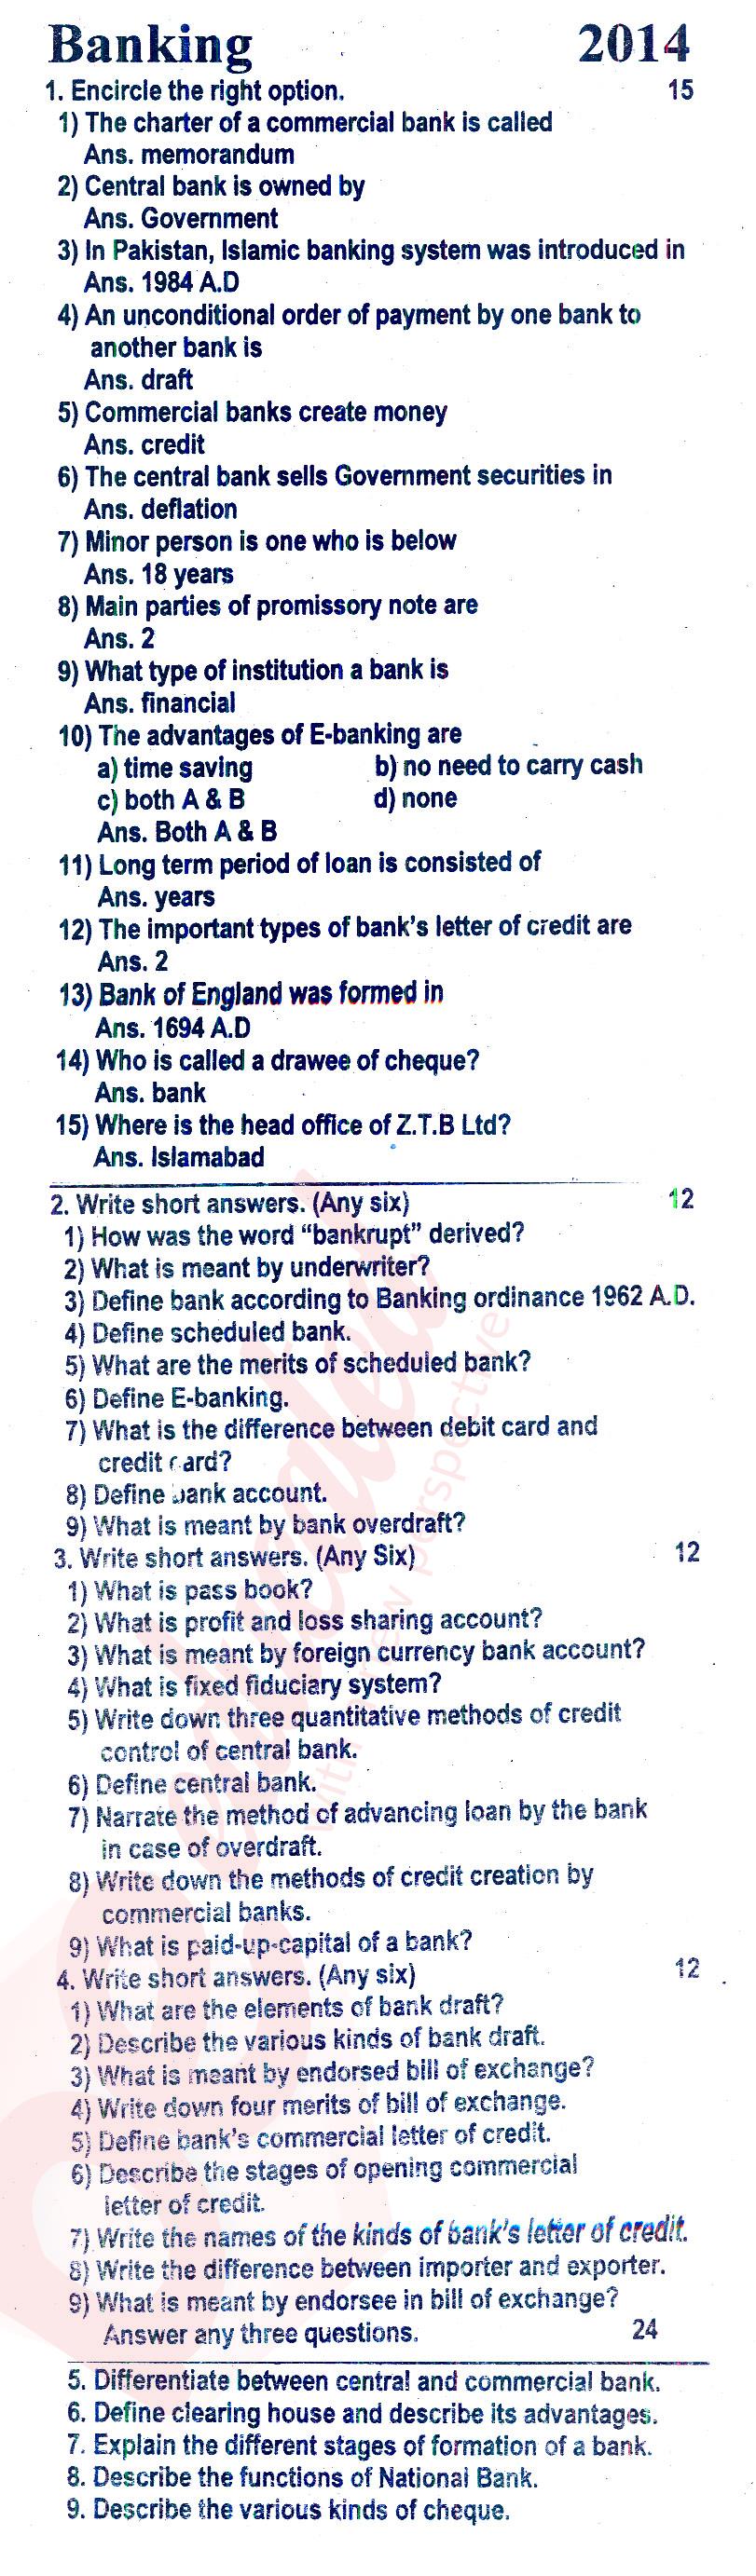 Principles of Banking ICOM Part 2 Past Paper Group 1 BISE Rawalpindi 2014